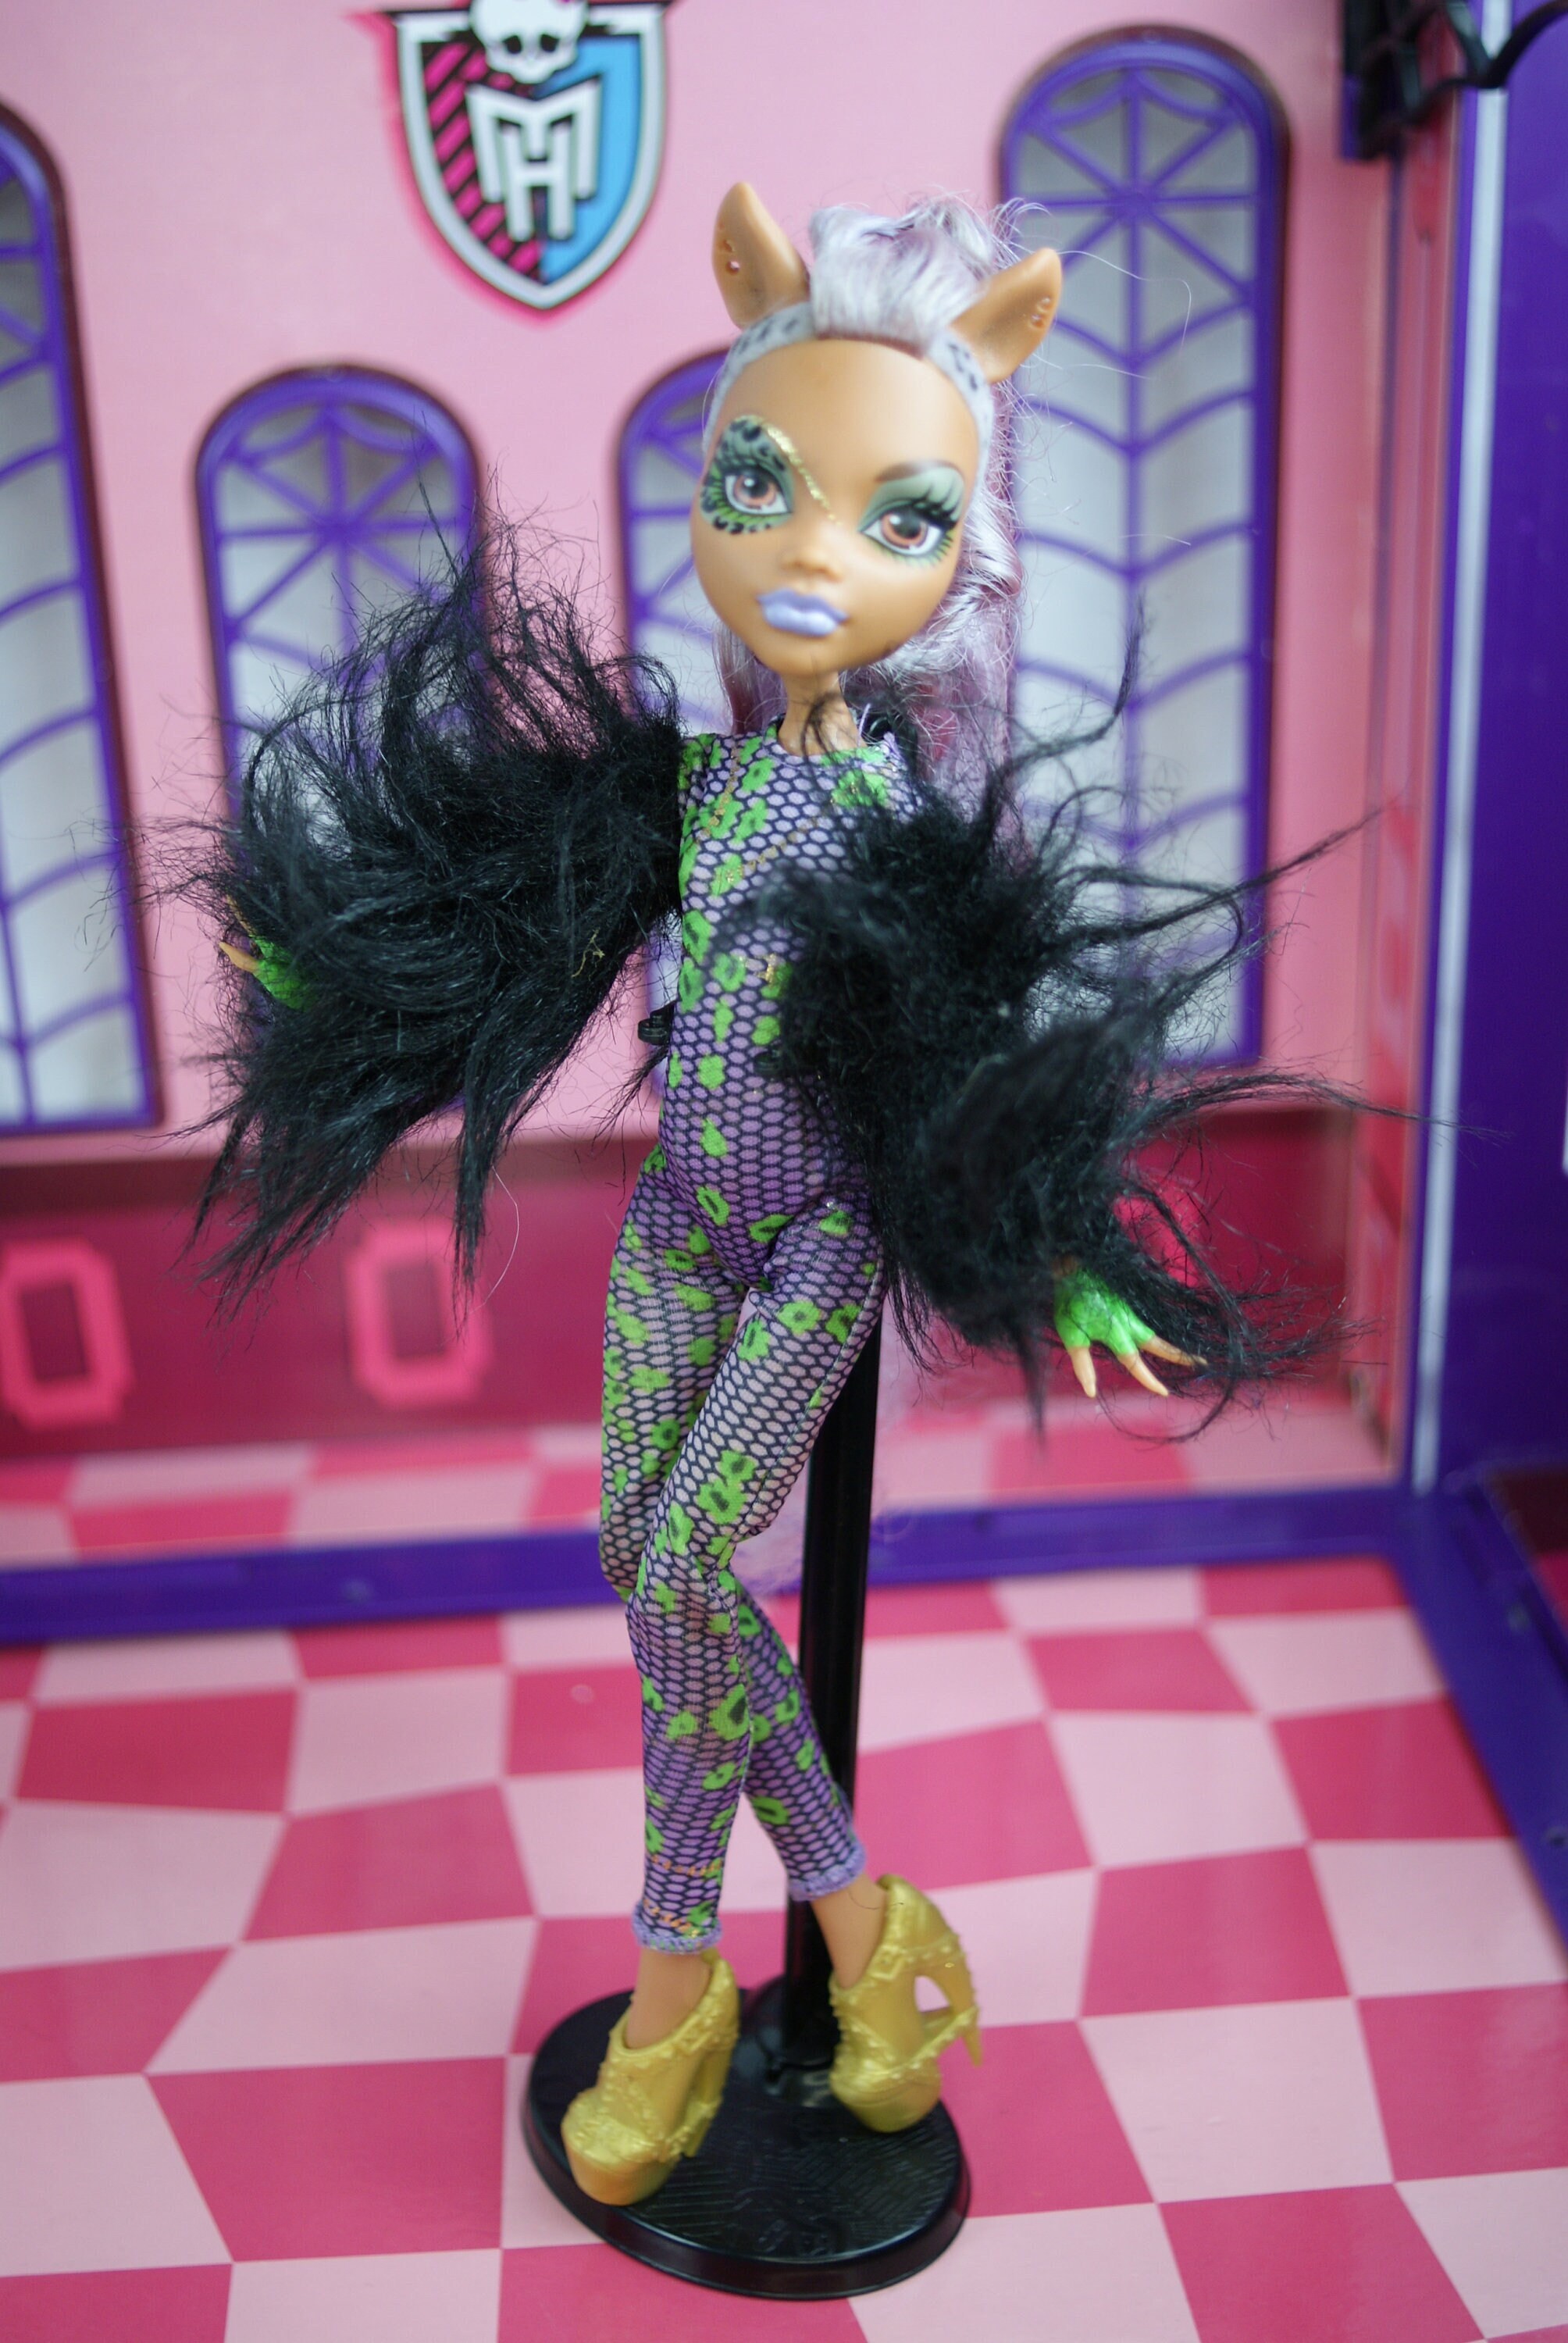 Monster High Skultimate Roller Maze Clawdeen Wolf Doll 2012 Mattel